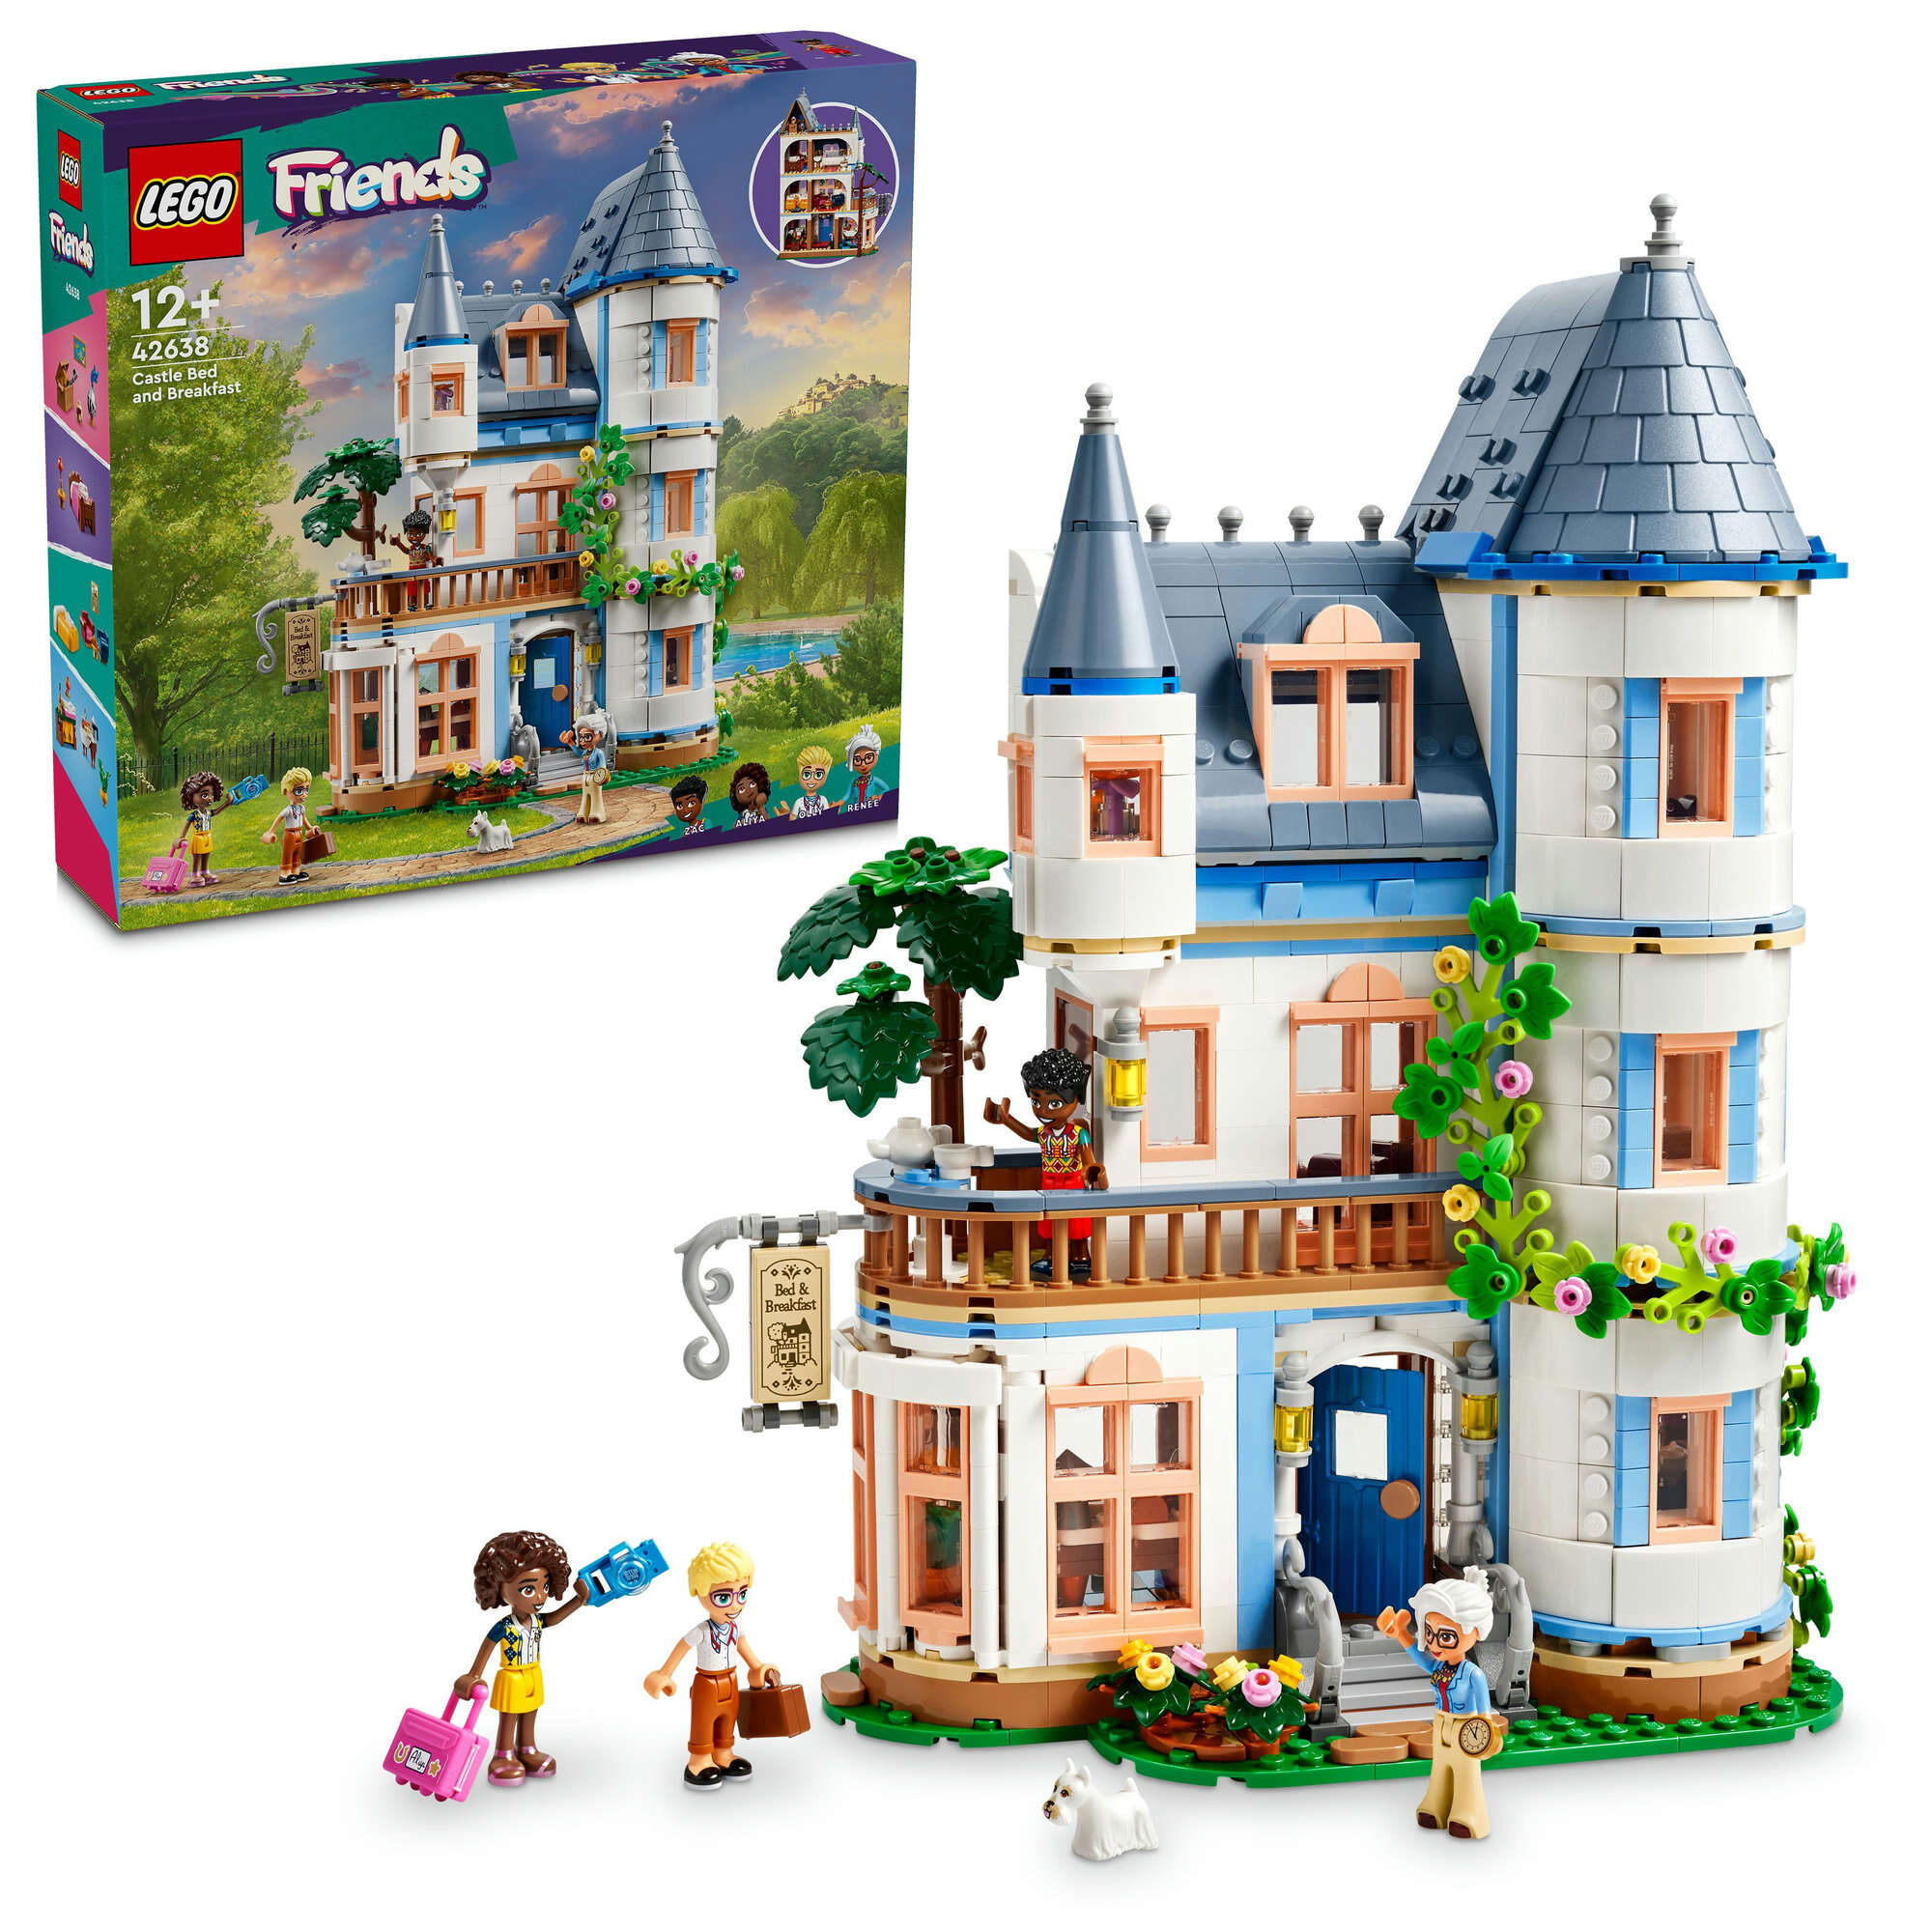 LEGO 42638 Friends Burg mit Ferienunterkunft, 4 Spielfiguren, 3 Etagen